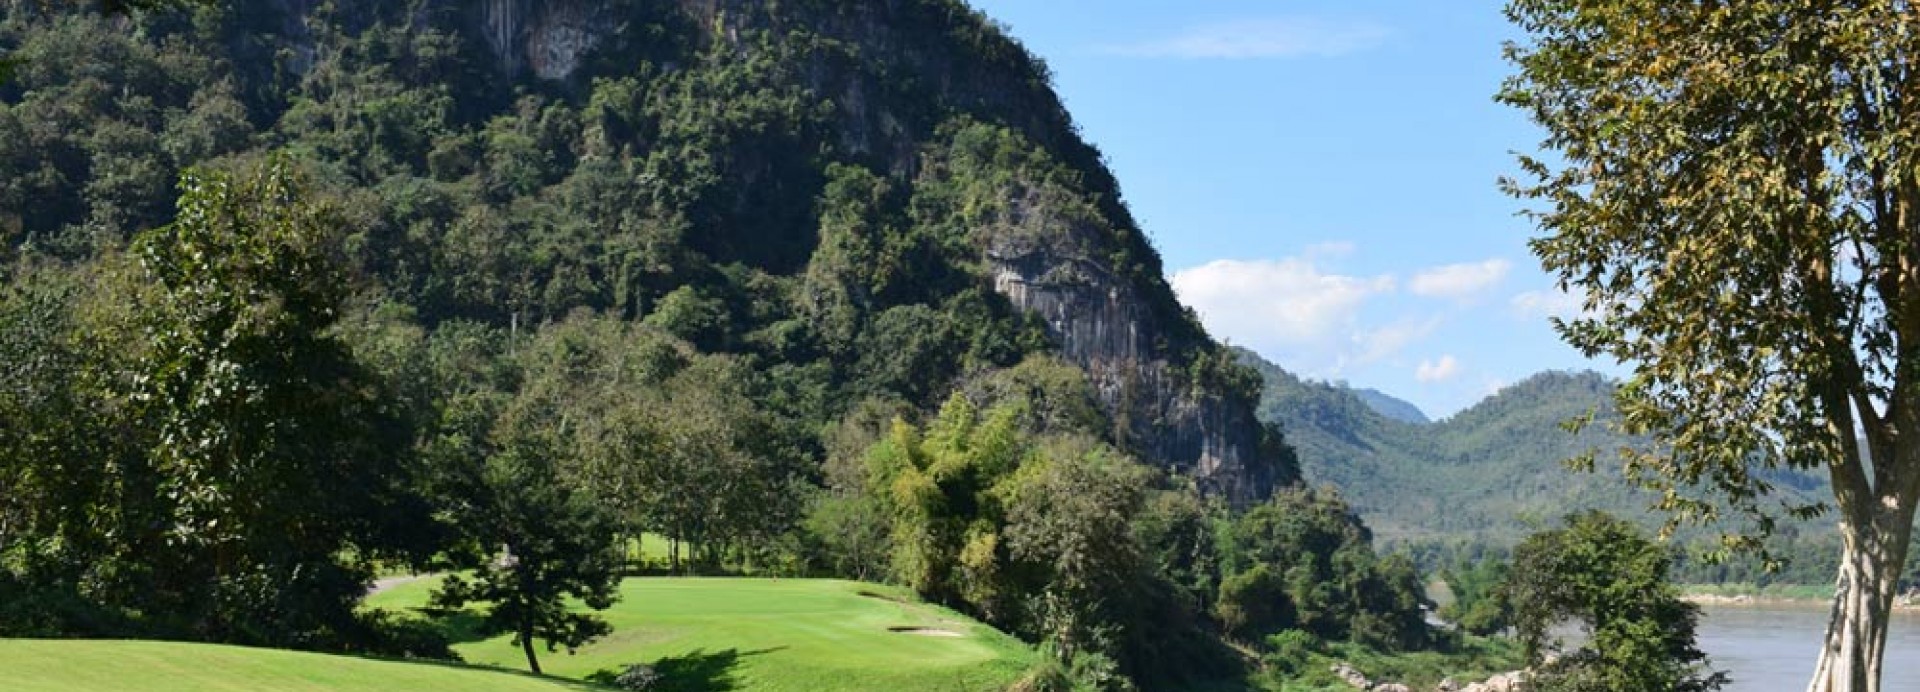 Luang Prabang Golf Club  | Golfové zájezdy, golfová dovolená, luxusní golf